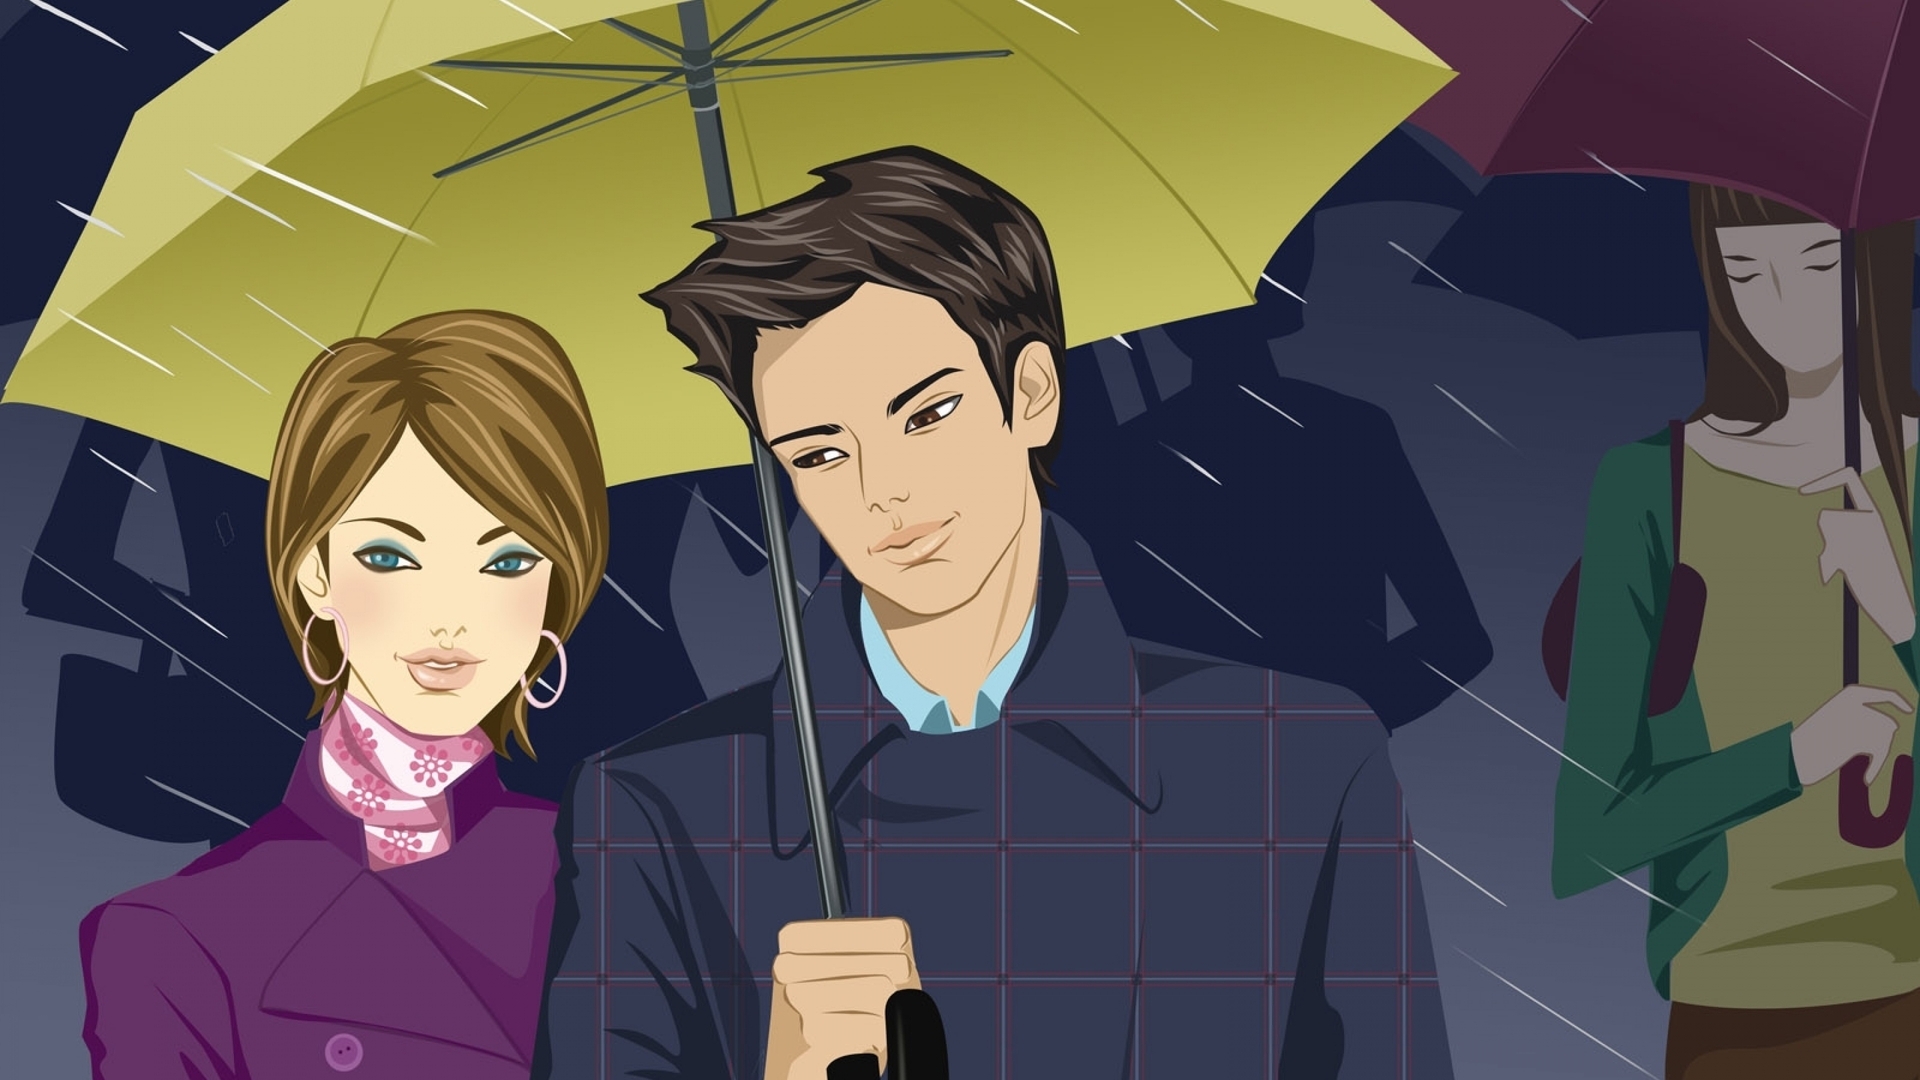 Картинка: Мужчина, девушка, дождь, зонтик, красивые, стиль, пара